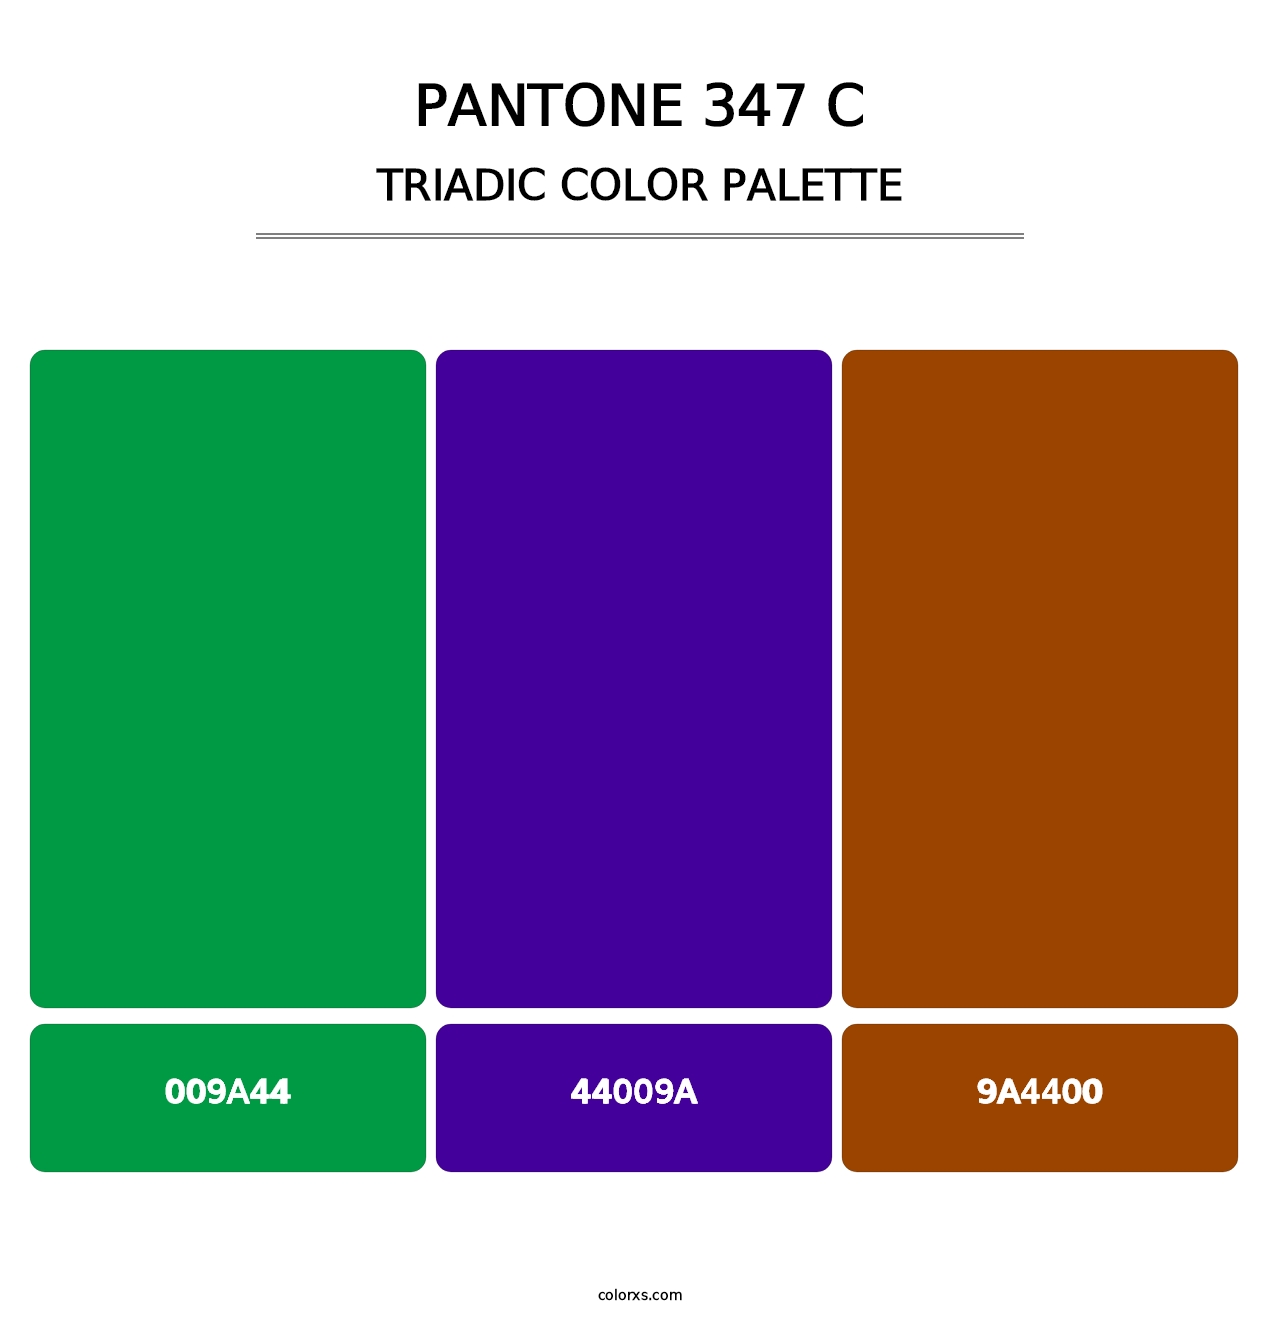 PANTONE 347 C - Triadic Color Palette